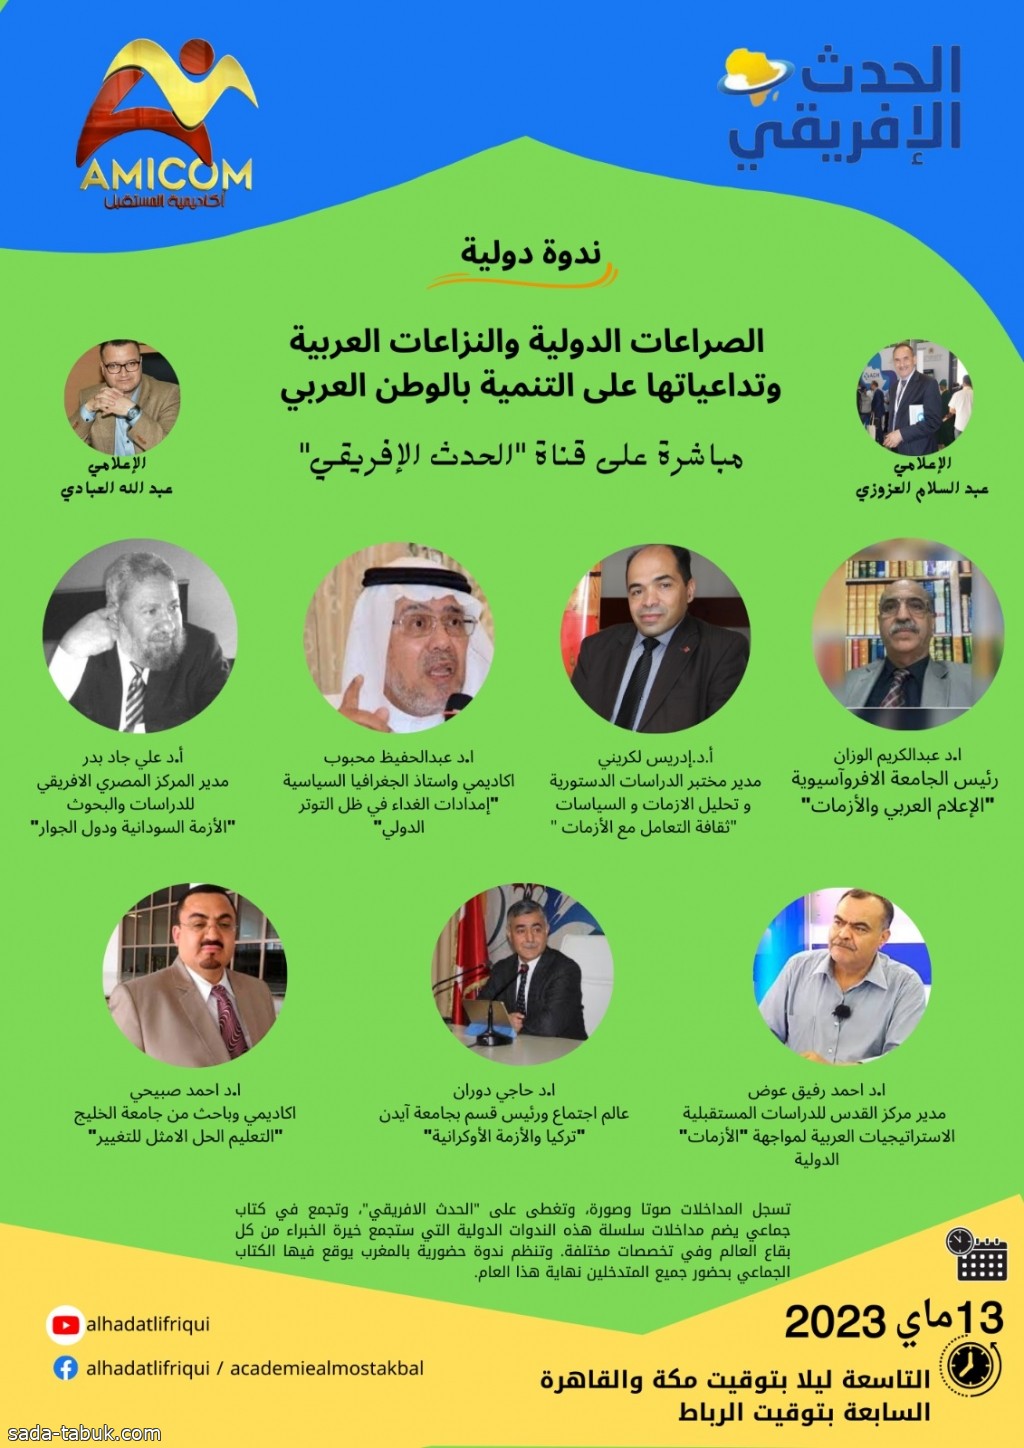 الوزان في ندوة الصراعات الدولية والنزاعات العربية وتداعياتها على التنمية بالوطن العربي